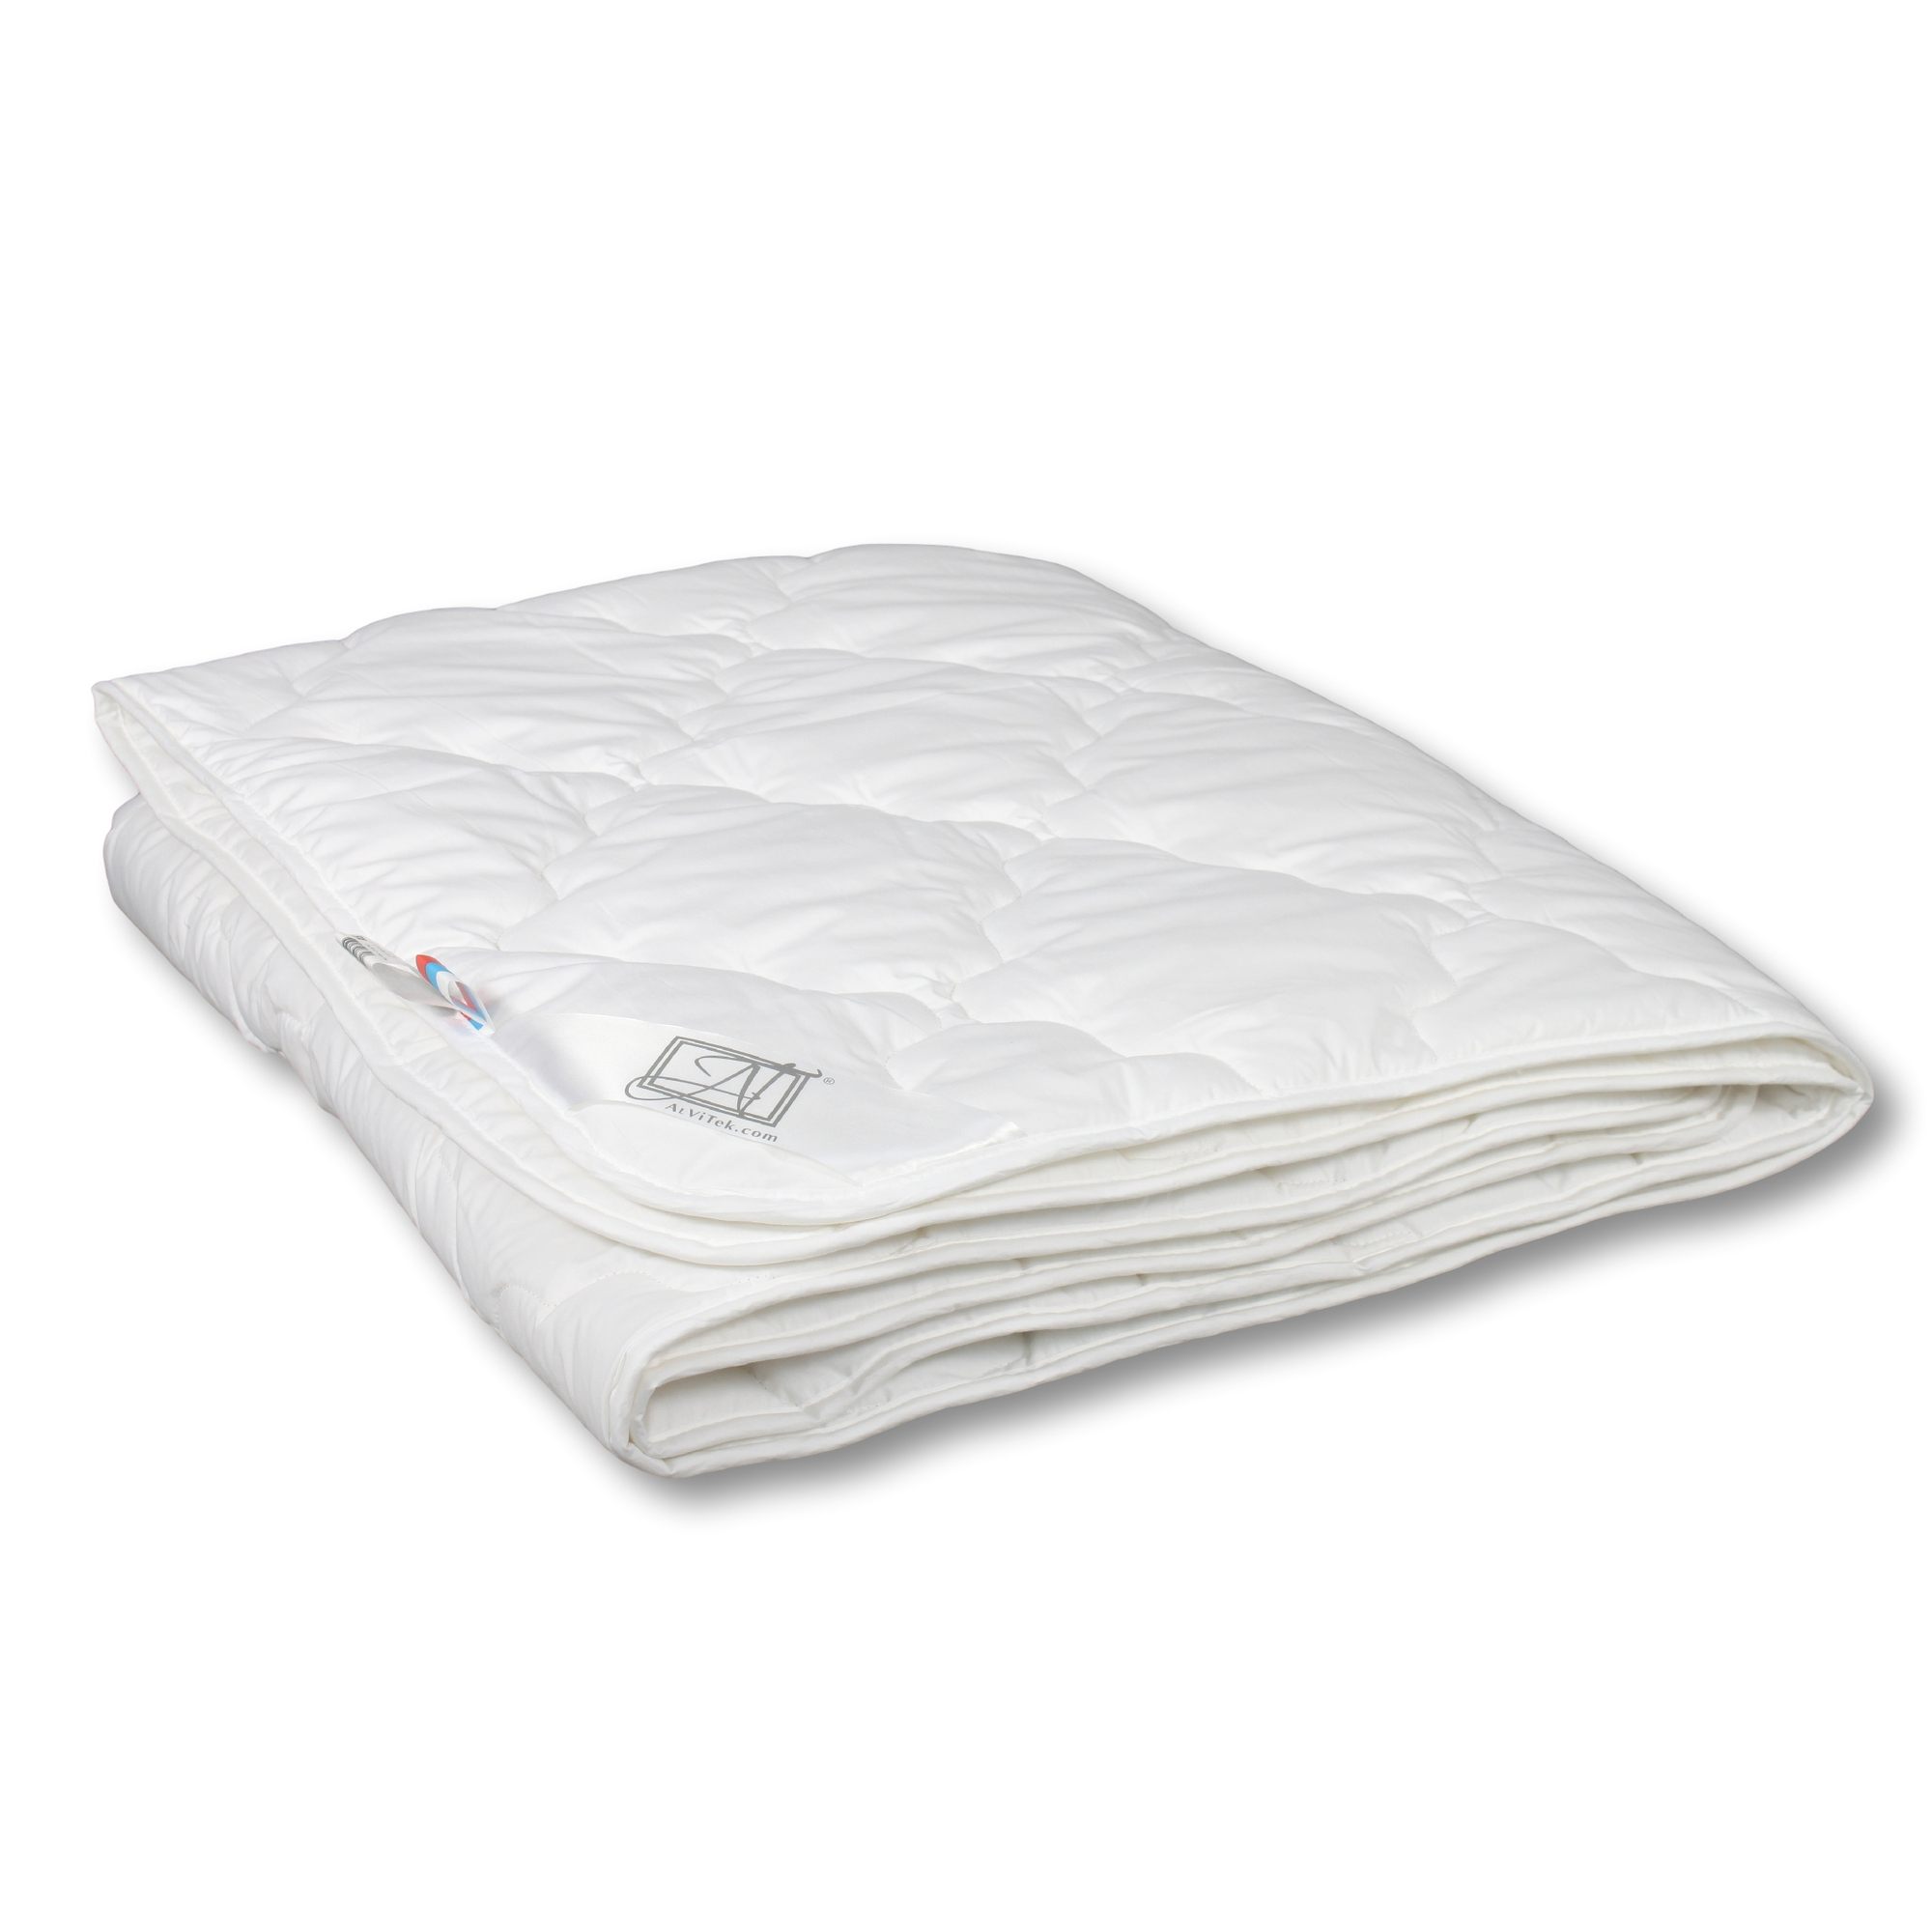 Одеяло Benvenuto Легкое (200x220 см), размер 200х220 см, цвет белый iff35254 Одеяло Benvenuto Легкое (200x220 см) - фото 1